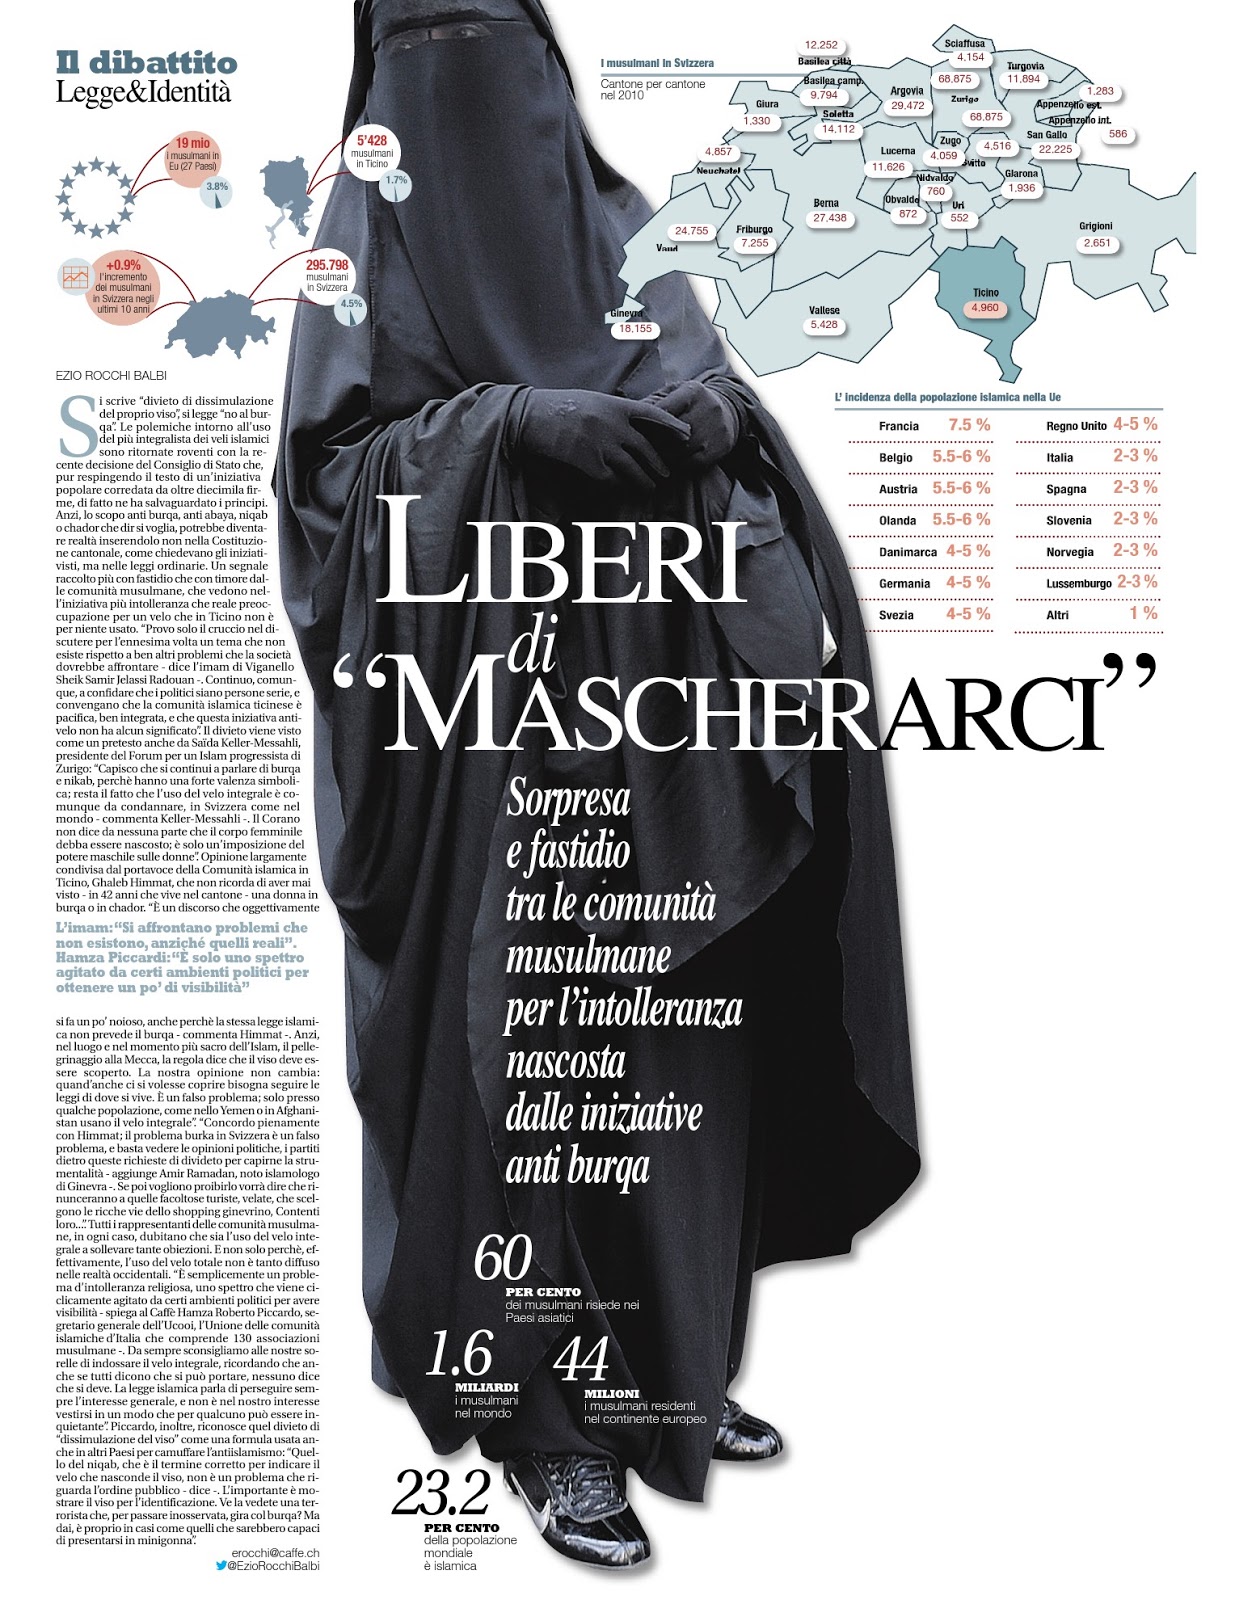 "No al burqa" in Ticino? - Il Caffé del 20.01.2013 - LMT